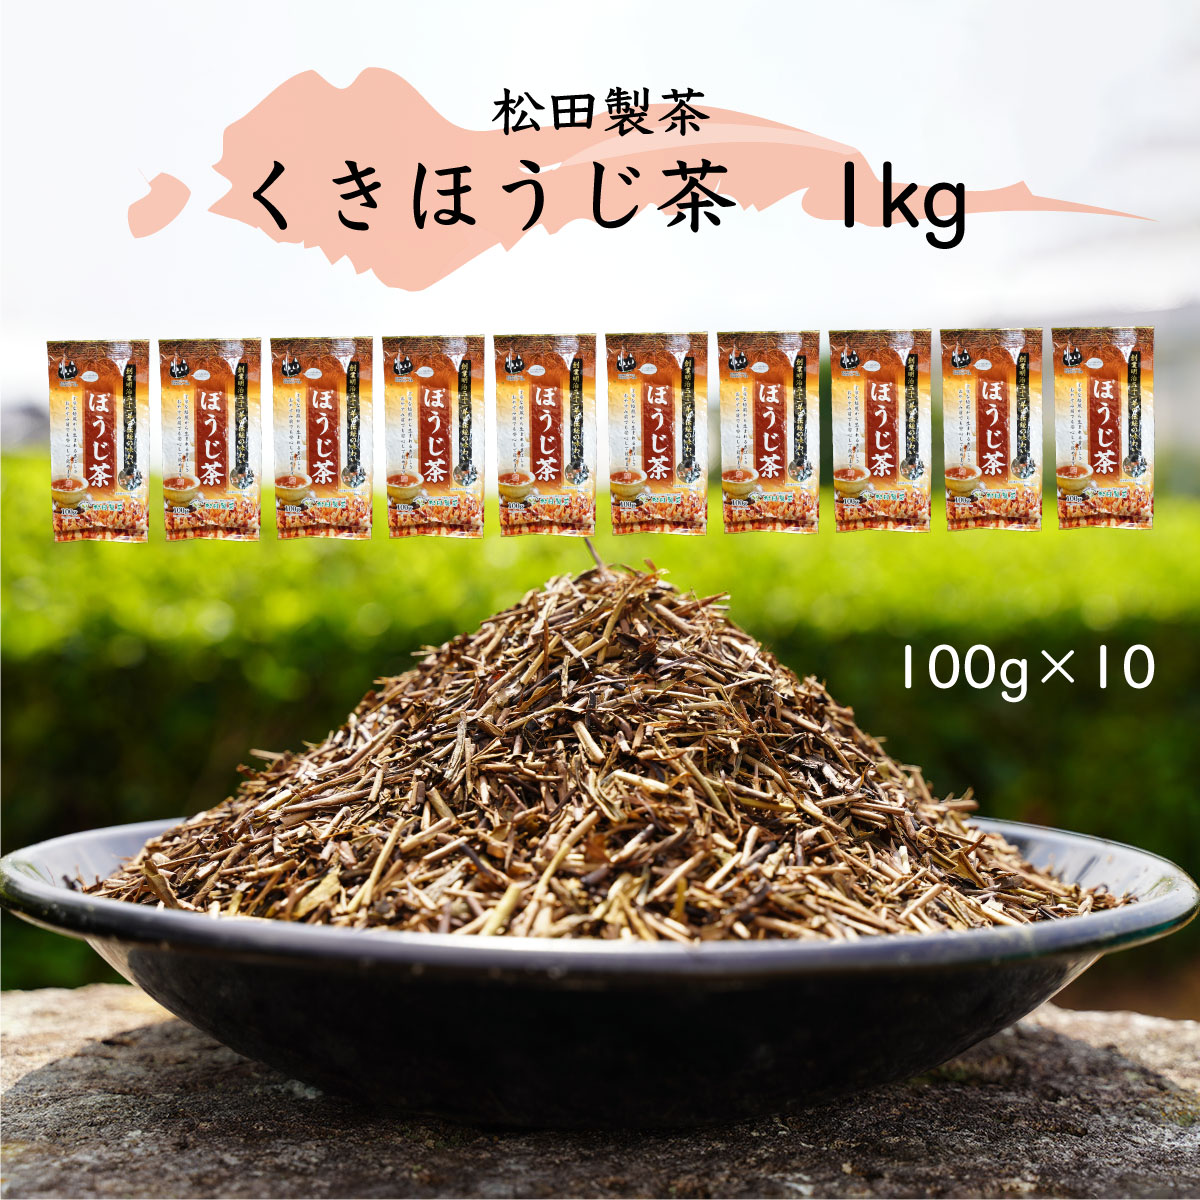 くきほうじ茶 （100g×10袋） 【合計１kg】 お茶 [AF100ya]